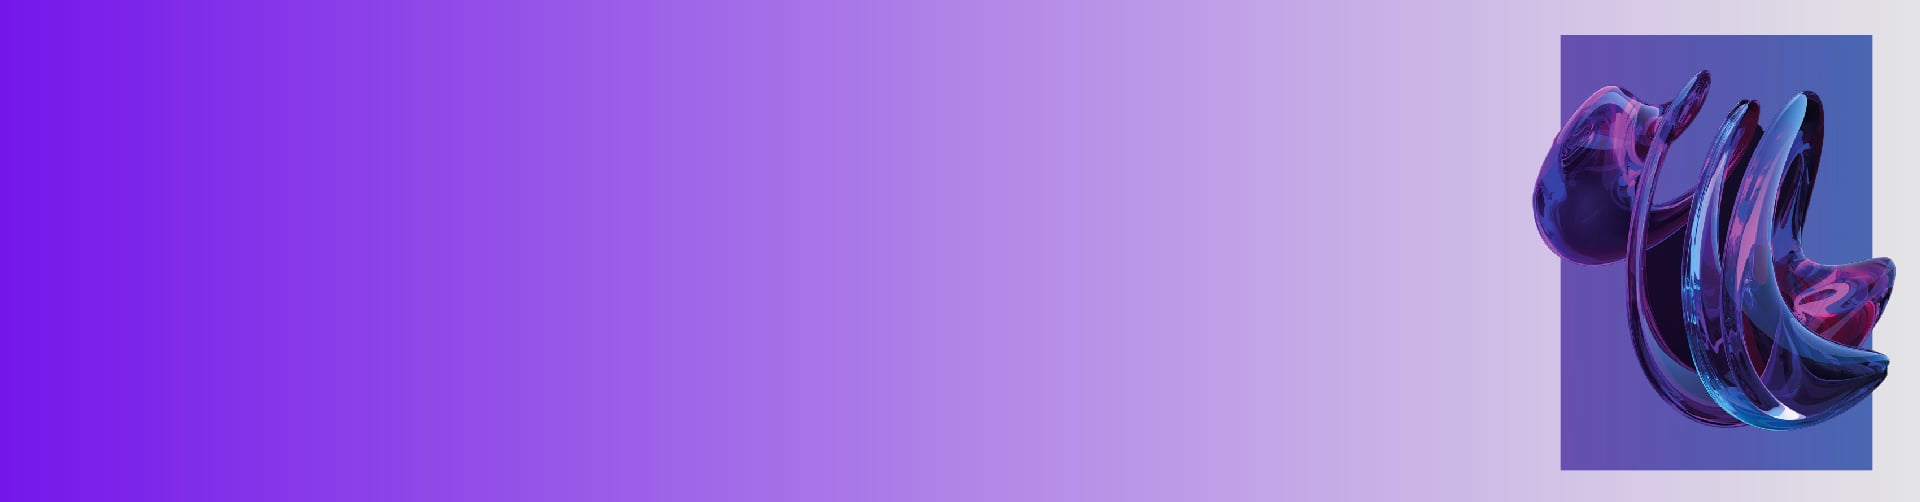 Imagen abstracta con detalles de color purpura y azul